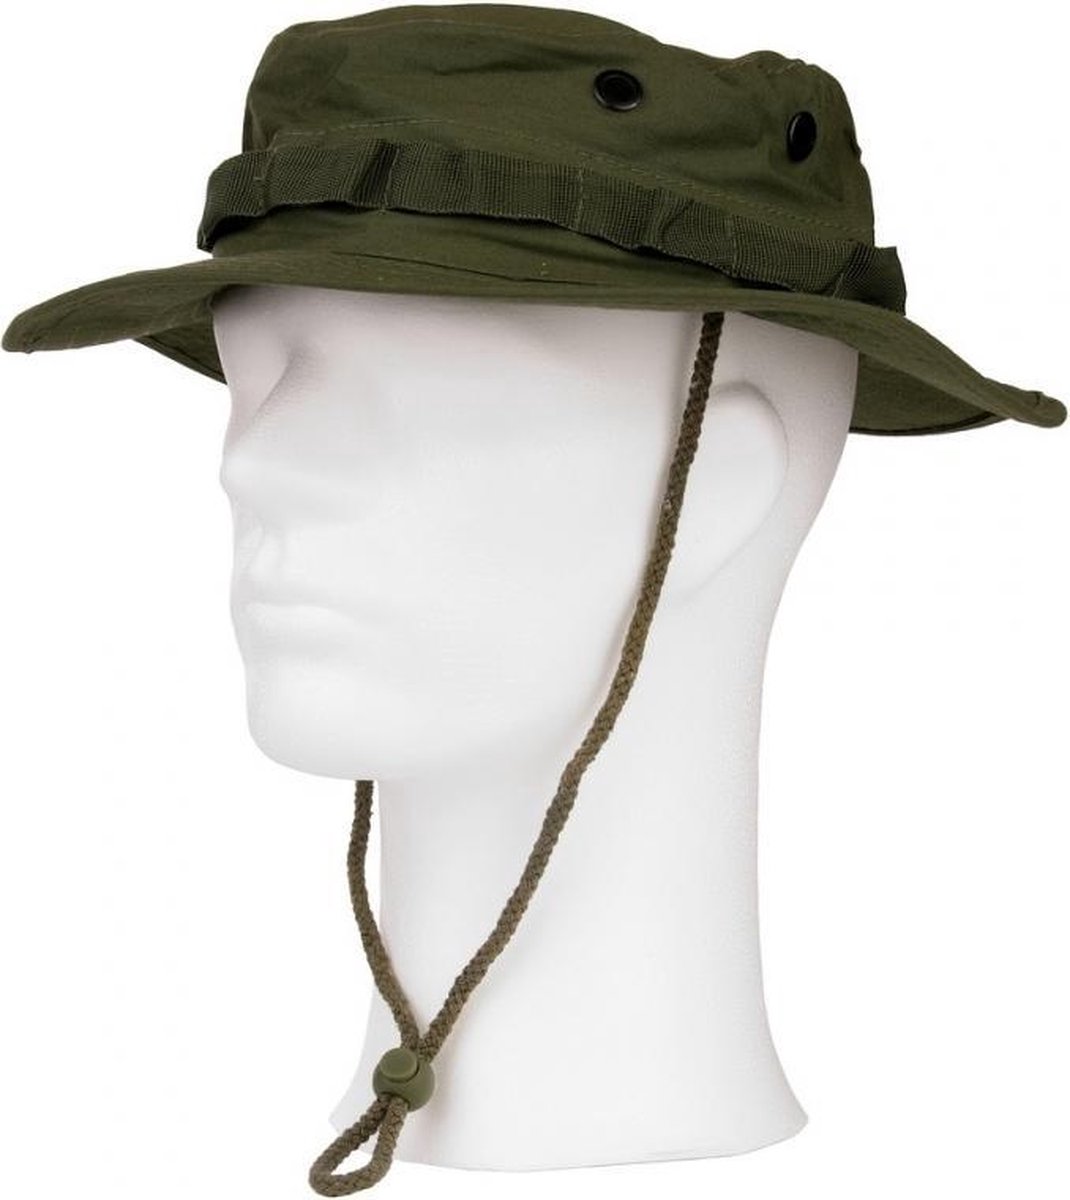 Groene bush hoed met extra drukknoop M (57)